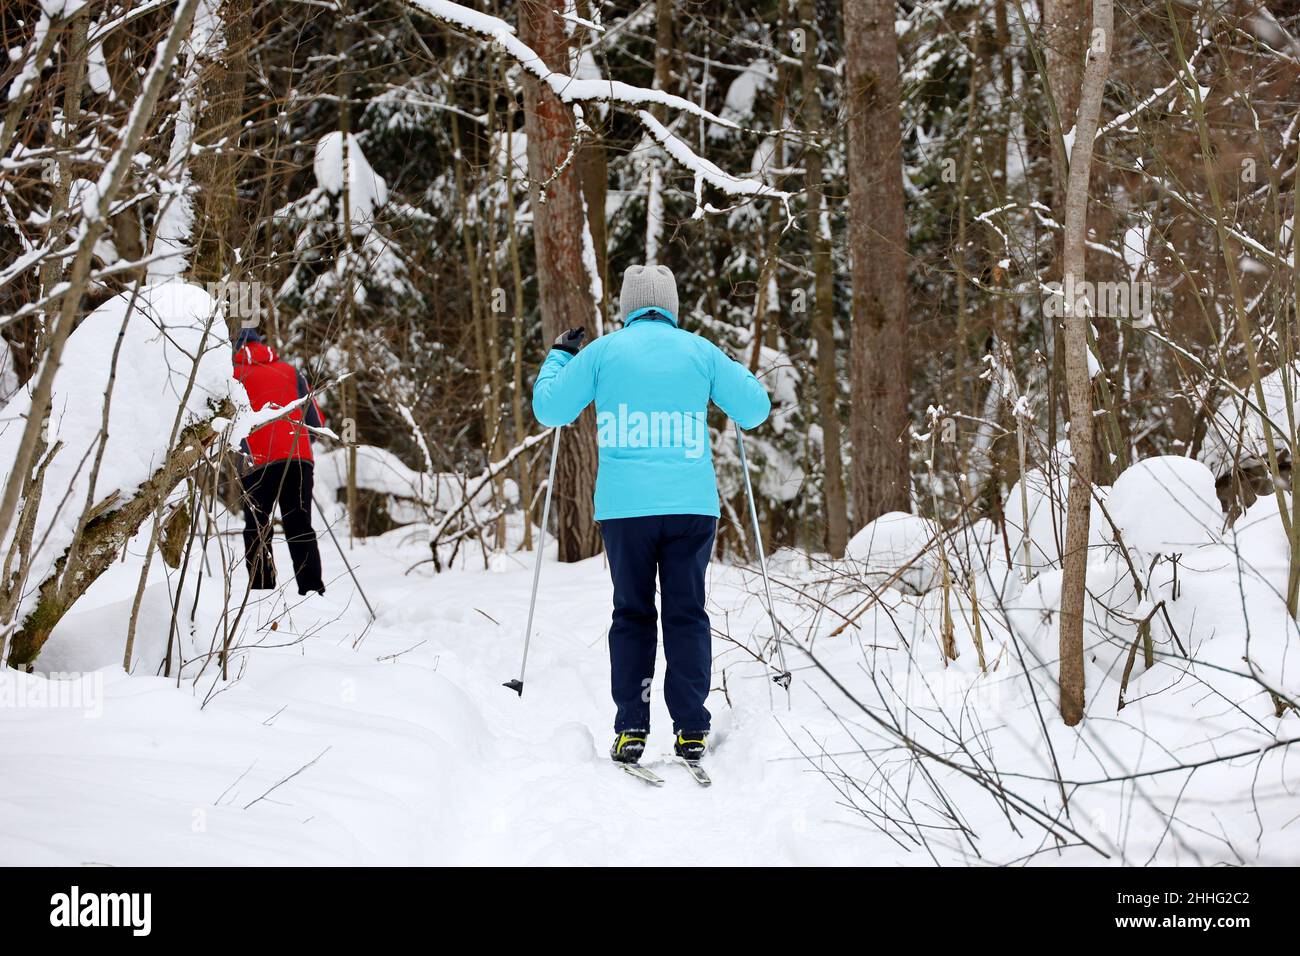 Les gens skier en forêt d'hiver.Femme skieuse marchant dans la neige à pinery Banque D'Images